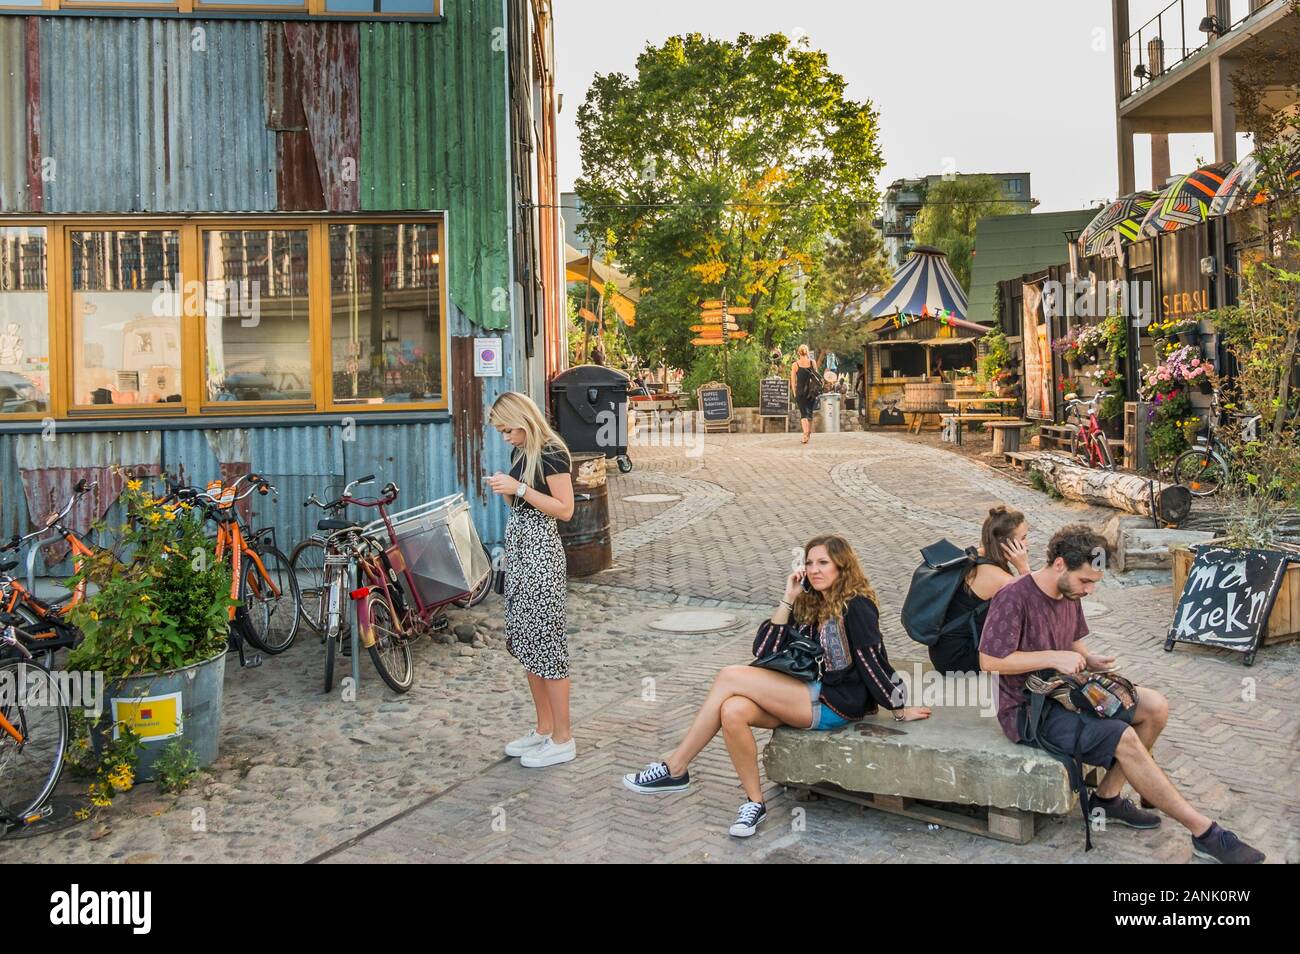 Junge Menschen im Eingangsbereich der Holzmarkt, alternativen kulturellen Veranstaltungsort Stockfoto